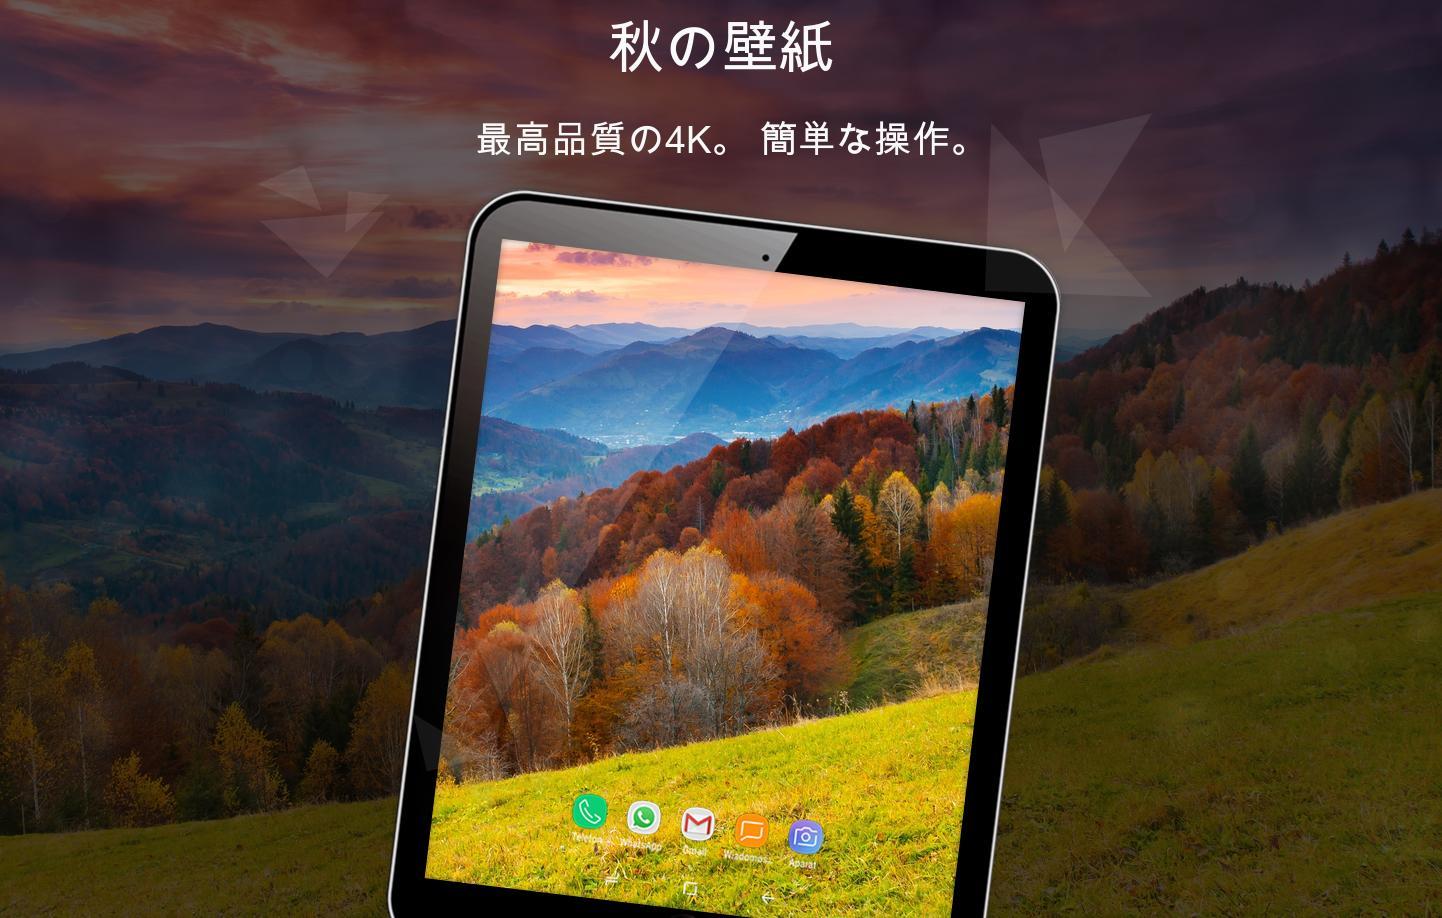 Android 用の 秋の壁紙4k Apk をダウンロード